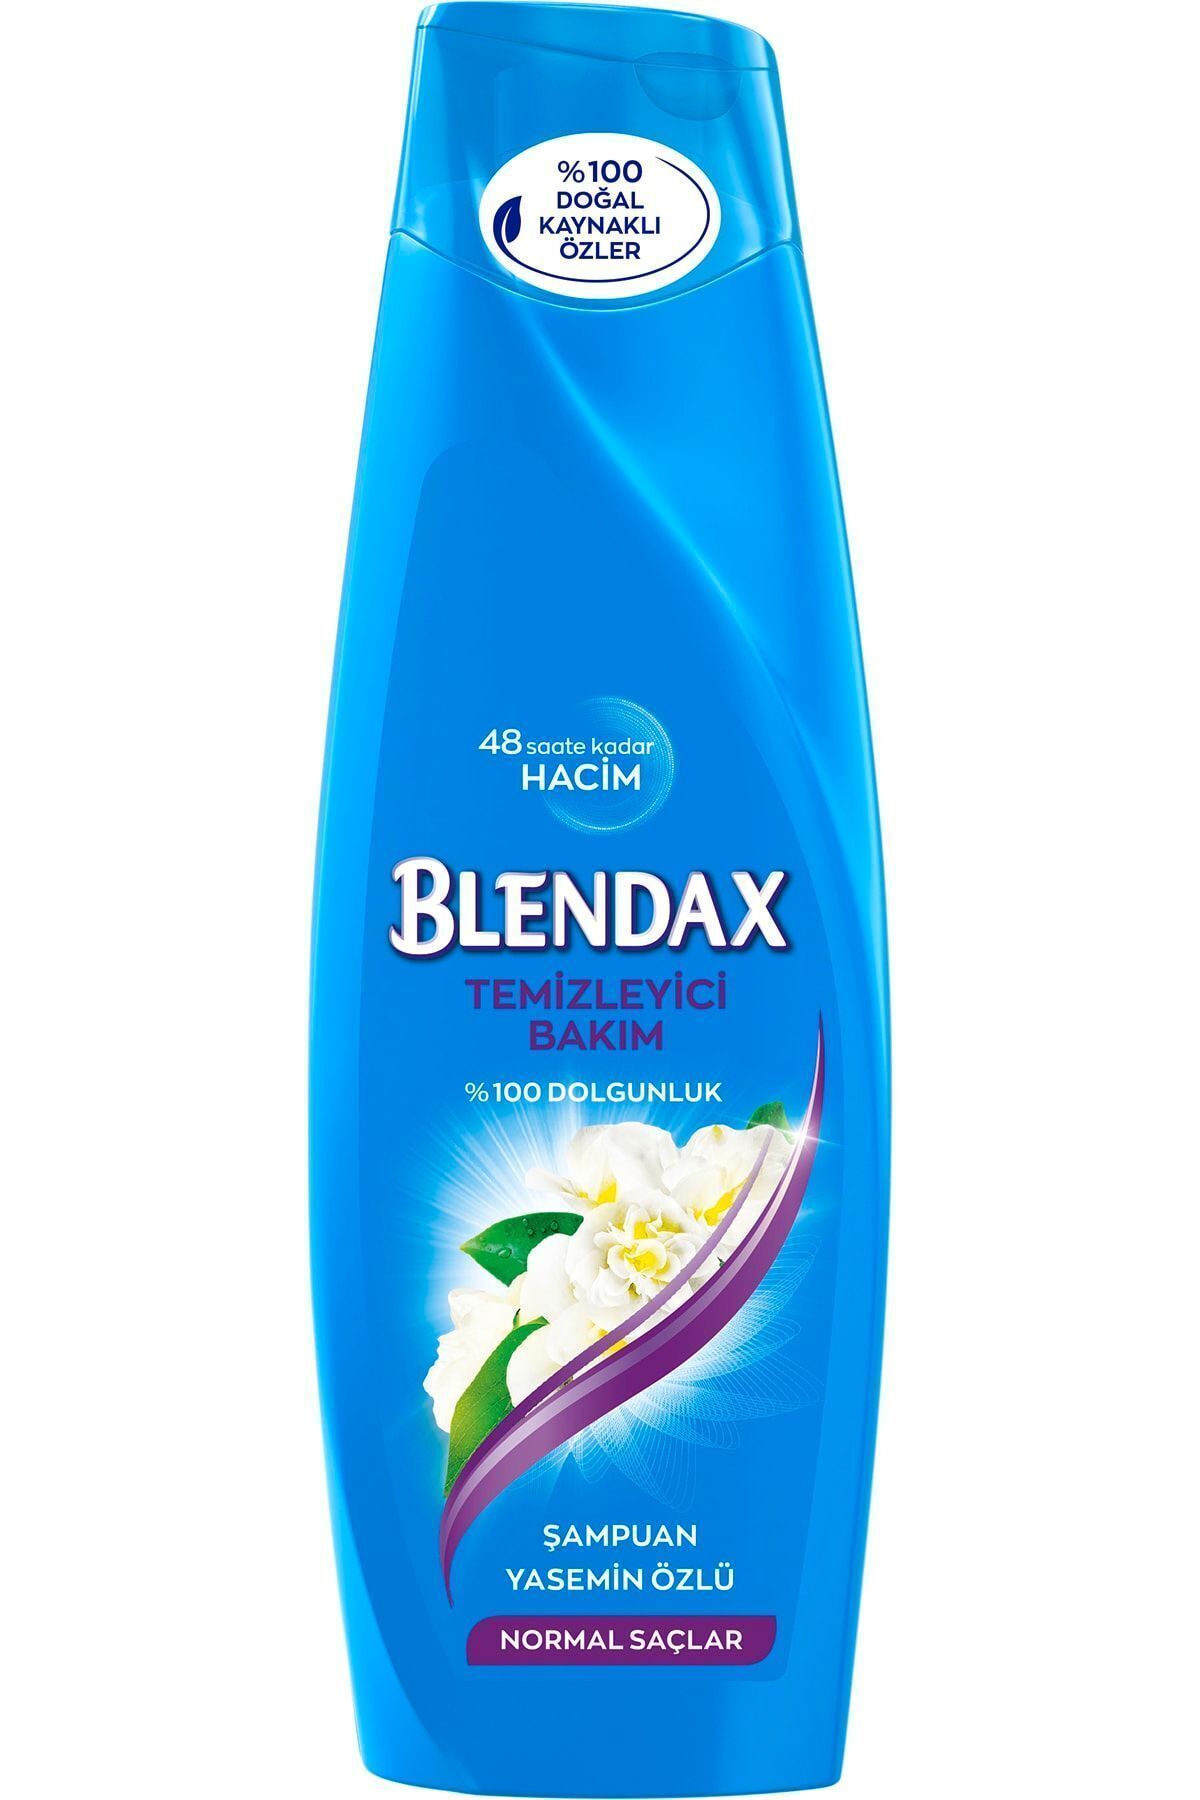 Blendax Temizleyici Bakım Yasemin Özlü Şampuan 360 ml